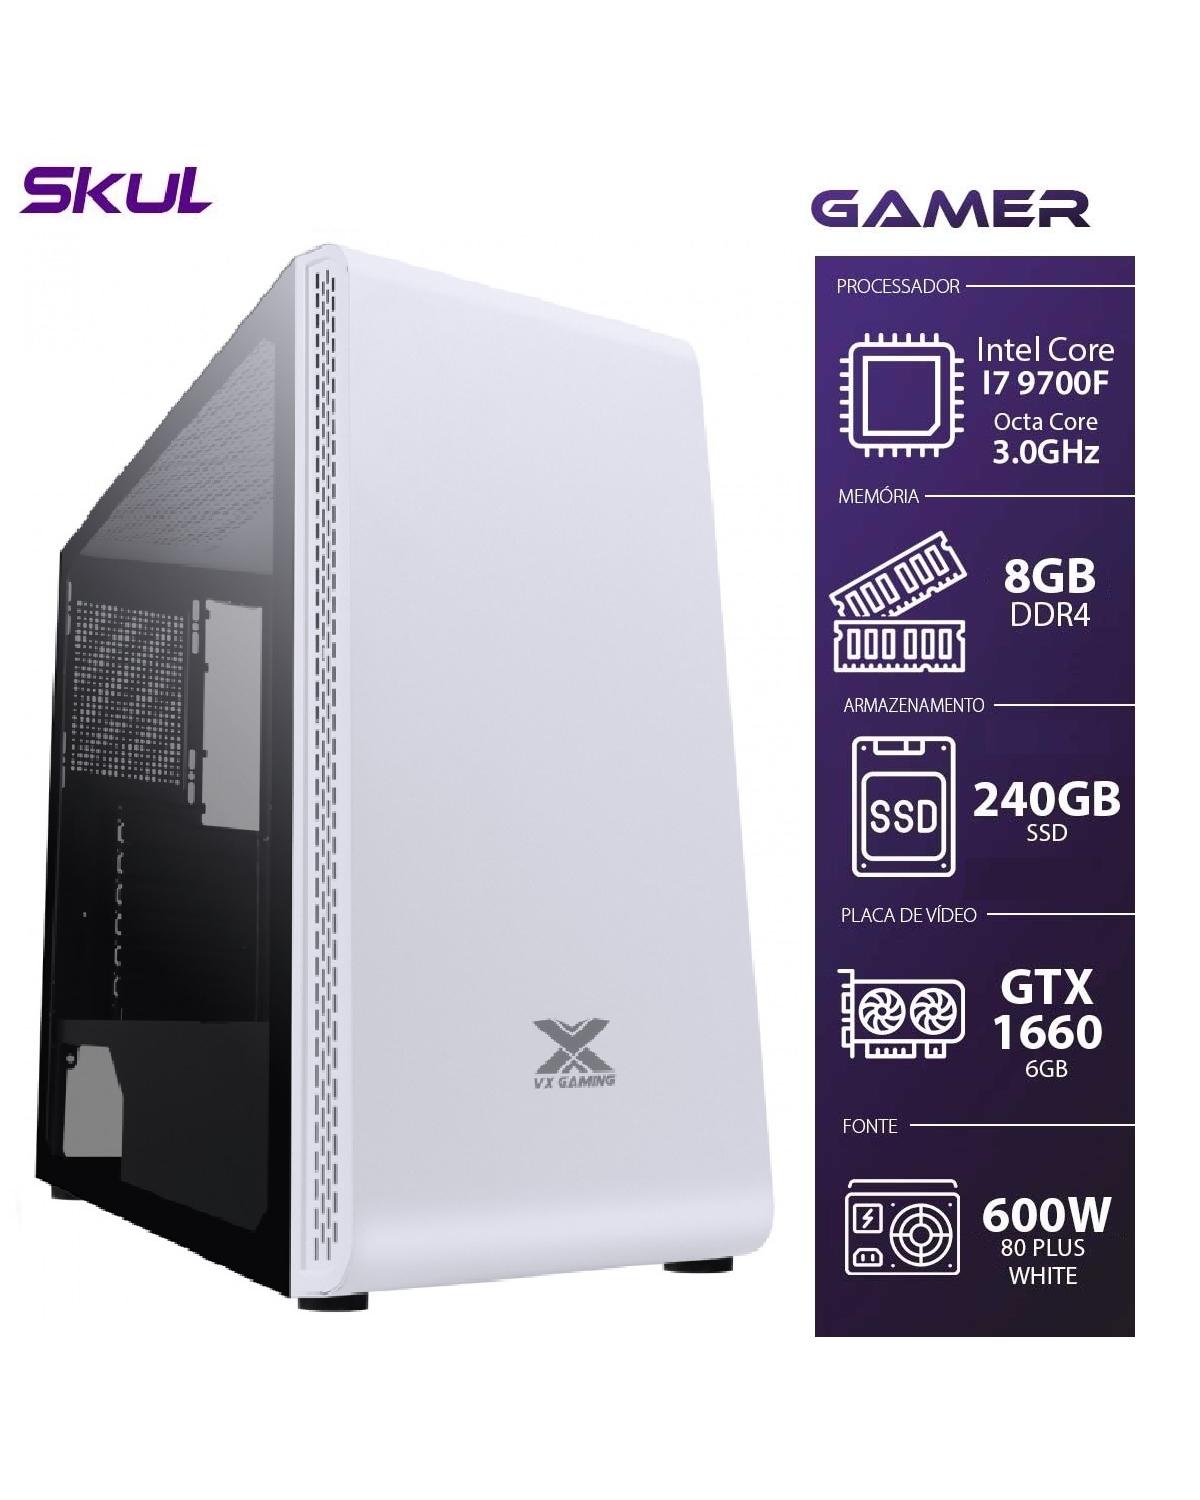 COMPUTADOR GAMER 7000 - I7 9700F 3.0GHZ 9ª GER. MEM. 8GB DDR4 SSD 240GB GTX1660 6GB FONTE 600W 80 PLUS WHITE